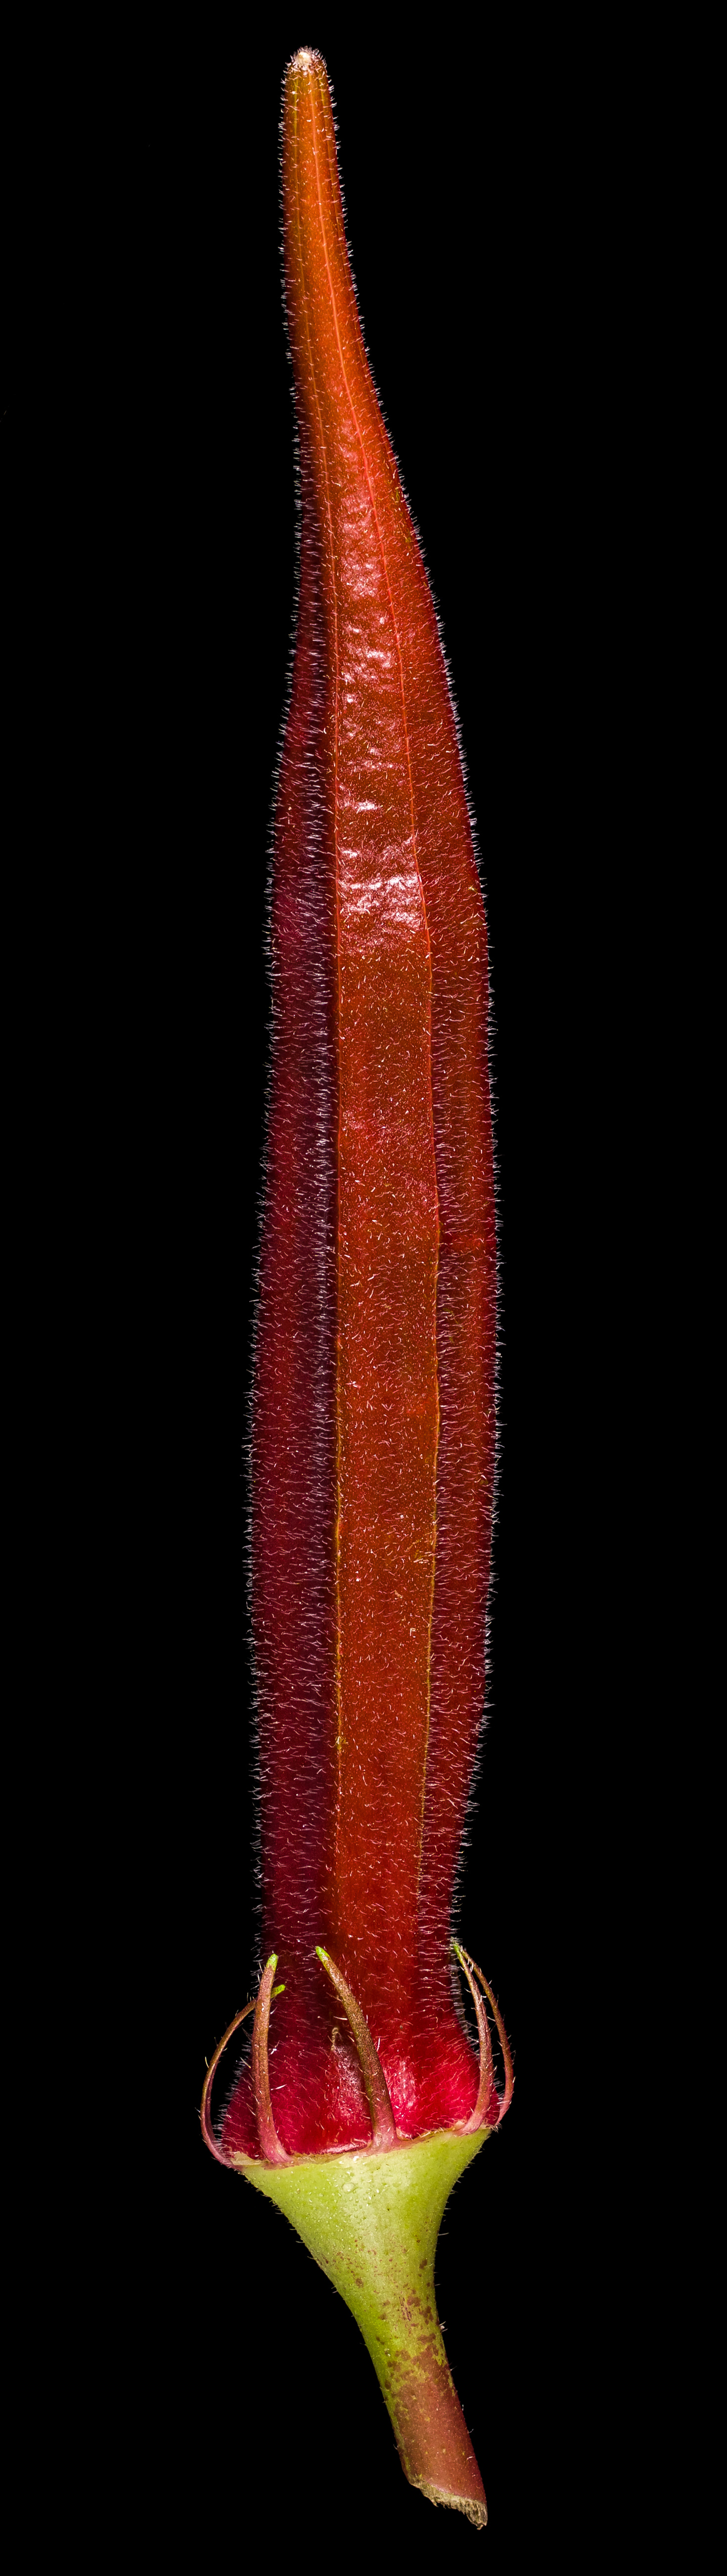 Red Velvet Okra: Abelmoschus esculentus ‚Red Velvet‘